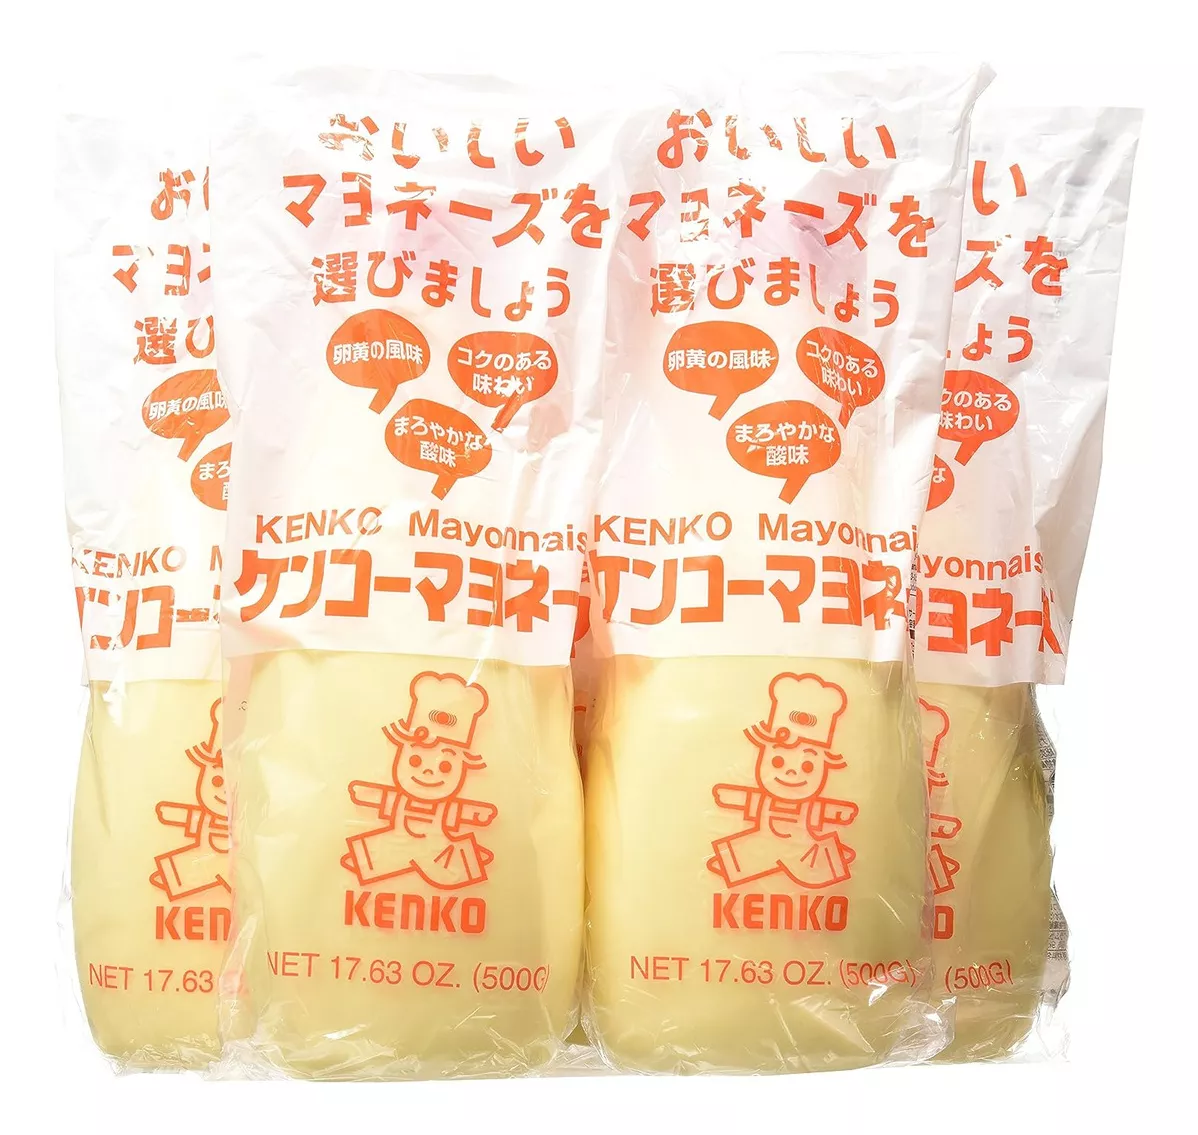 Primera imagen para búsqueda de mayonesa japonesa